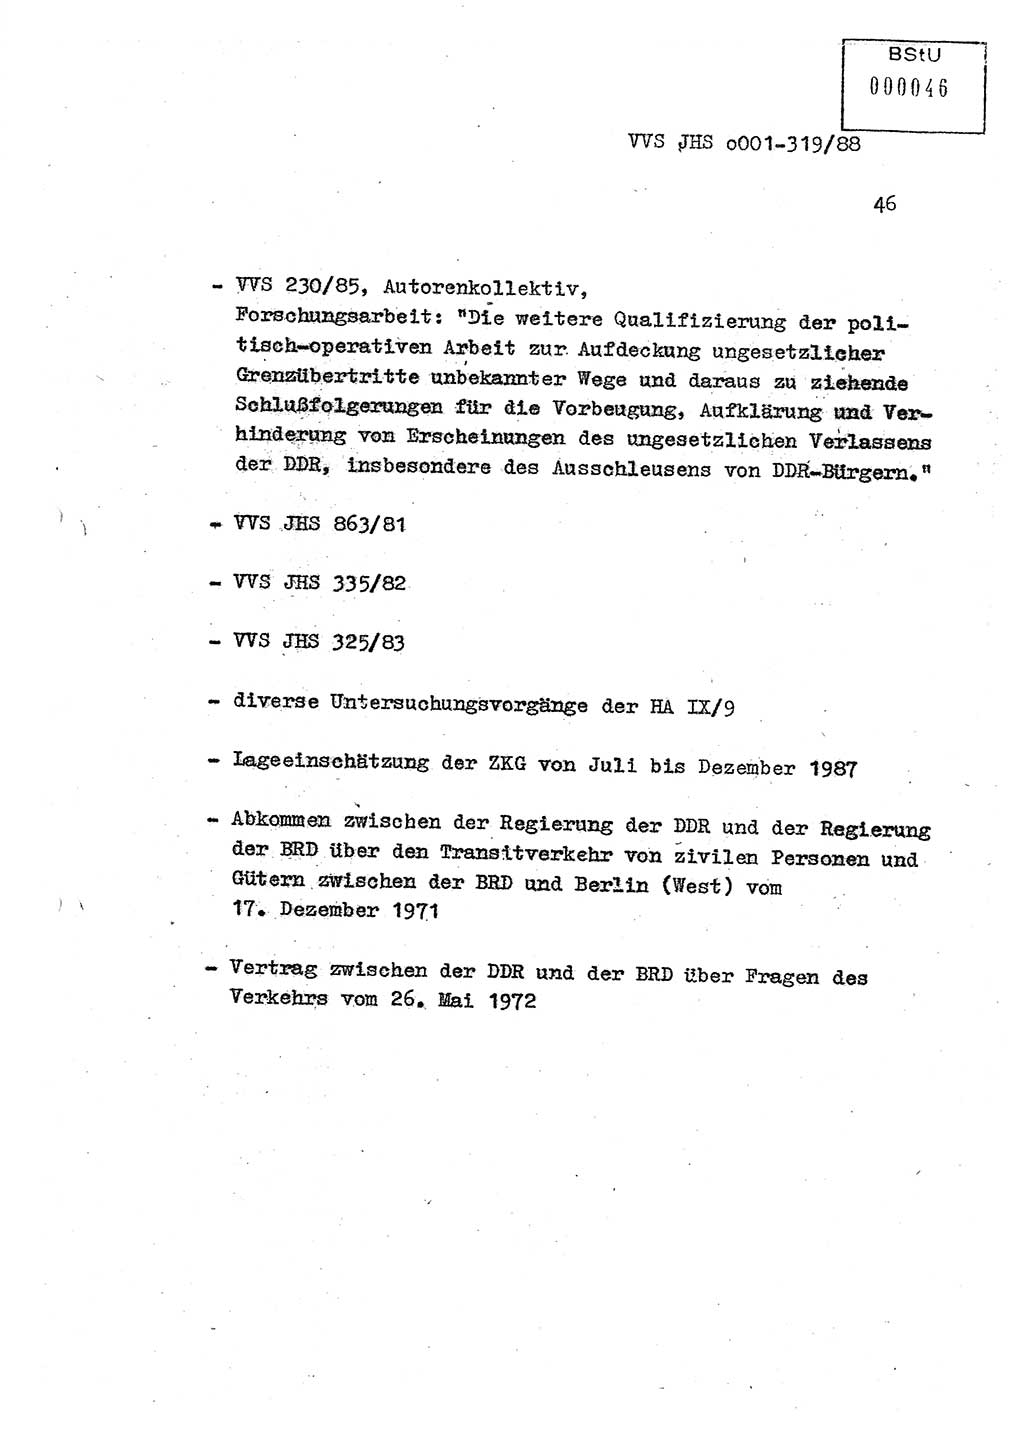 Diplomarbeit Offiziersschüler Holger Zirnstein (HA Ⅸ/9), Ministerium für Staatssicherheit (MfS) [Deutsche Demokratische Republik (DDR)], Juristische Hochschule (JHS), Vertrauliche Verschlußsache (VVS) o001-319/88, Potsdam 1988, Blatt 46 (Dipl.-Arb. MfS DDR JHS VVS o001-319/88 1988, Bl. 46)